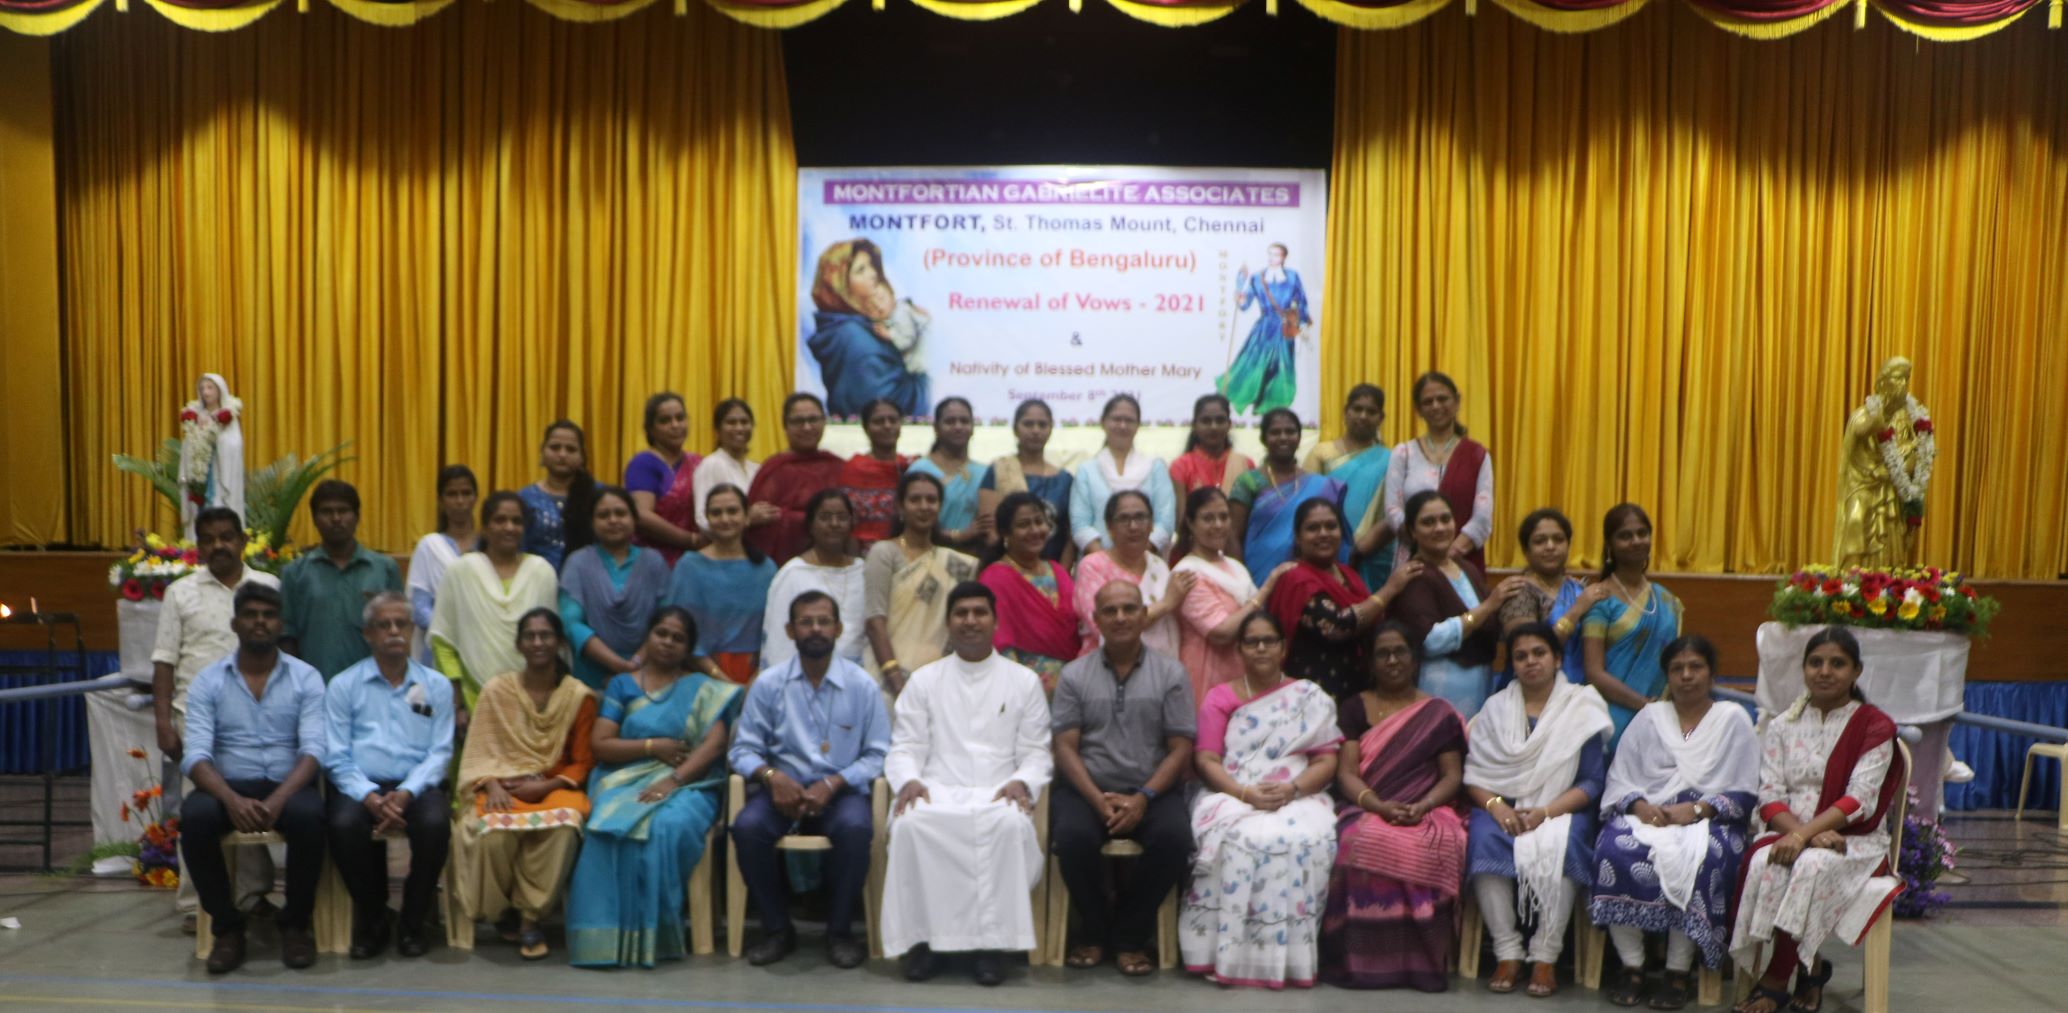 MGA – Provincia de Bengaluru – ST. THOMAS MOUNT CHENNAI – 40 miembros renovaron sus consagración